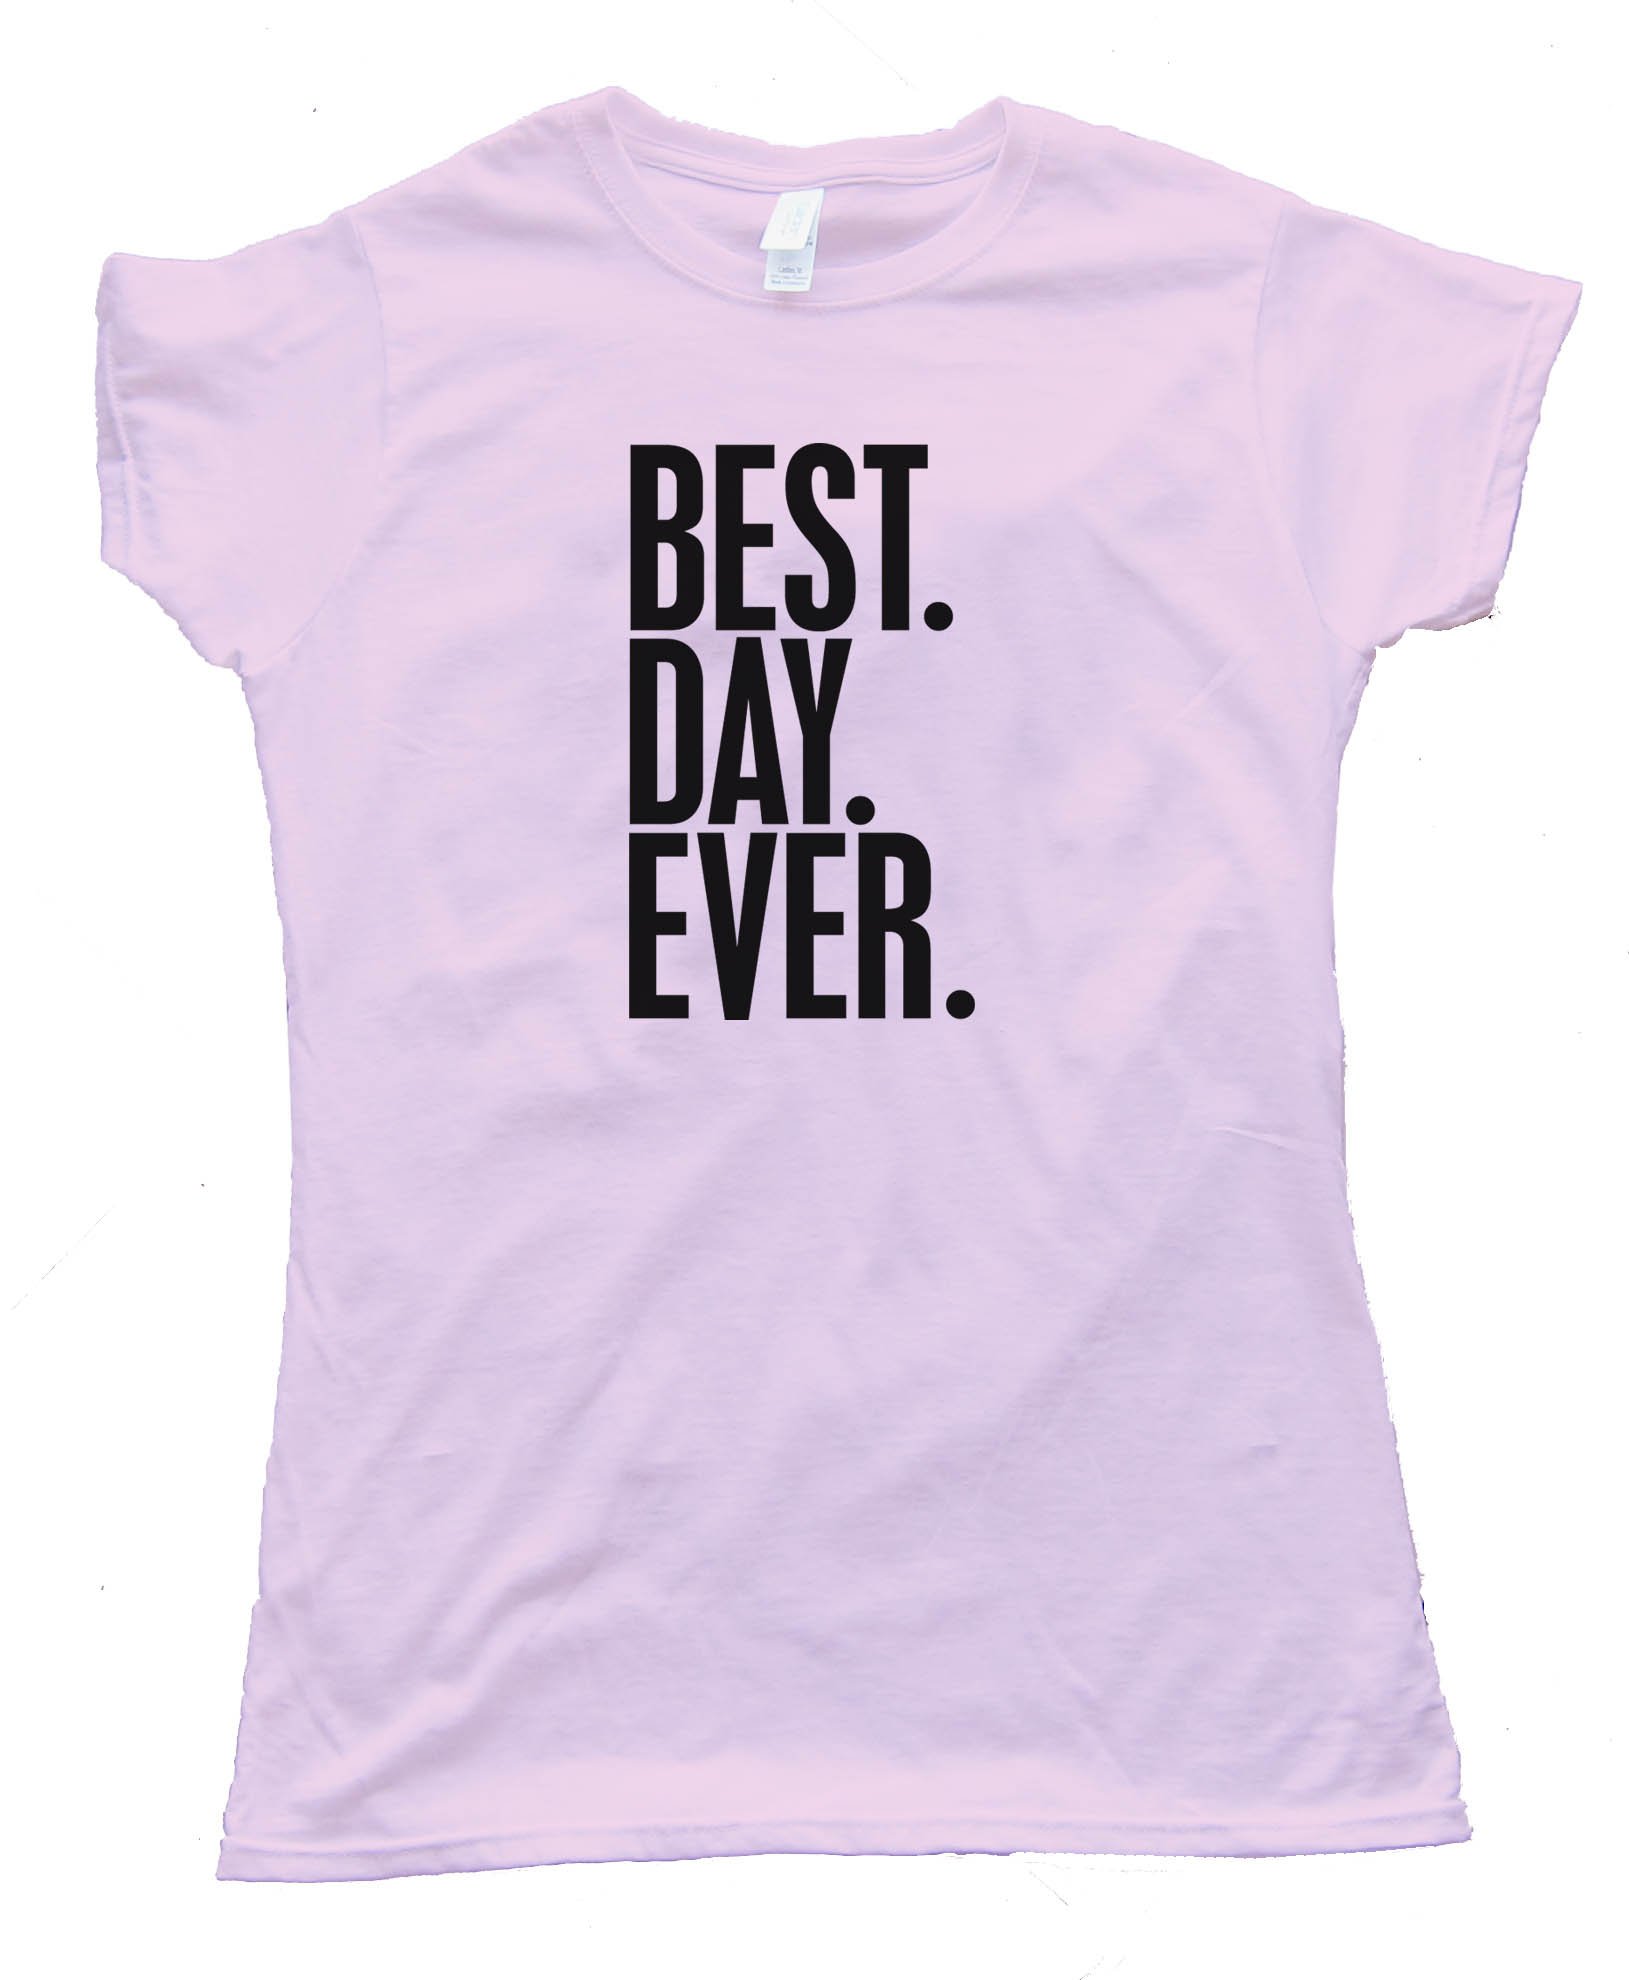 Womens Best. Day. Ever. - Tee Shirt